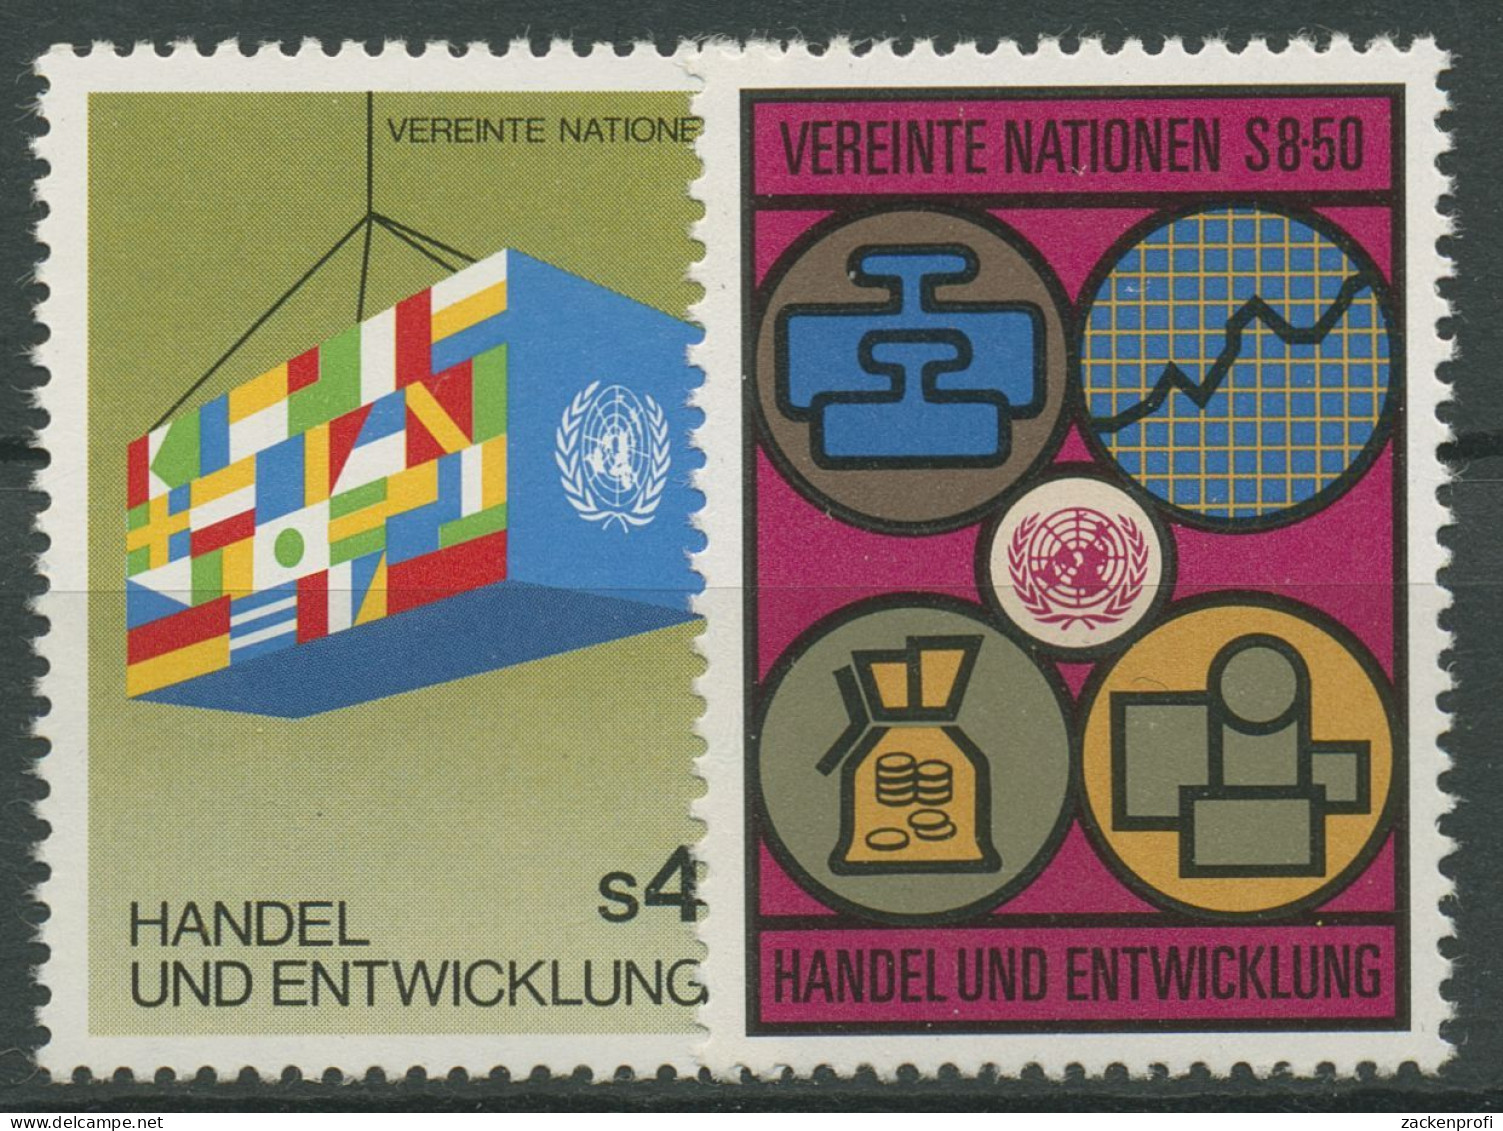 UNO Wien 1983 Handel Und Entwicklung UNCTAD 34/35 Postfrisch - Unused Stamps